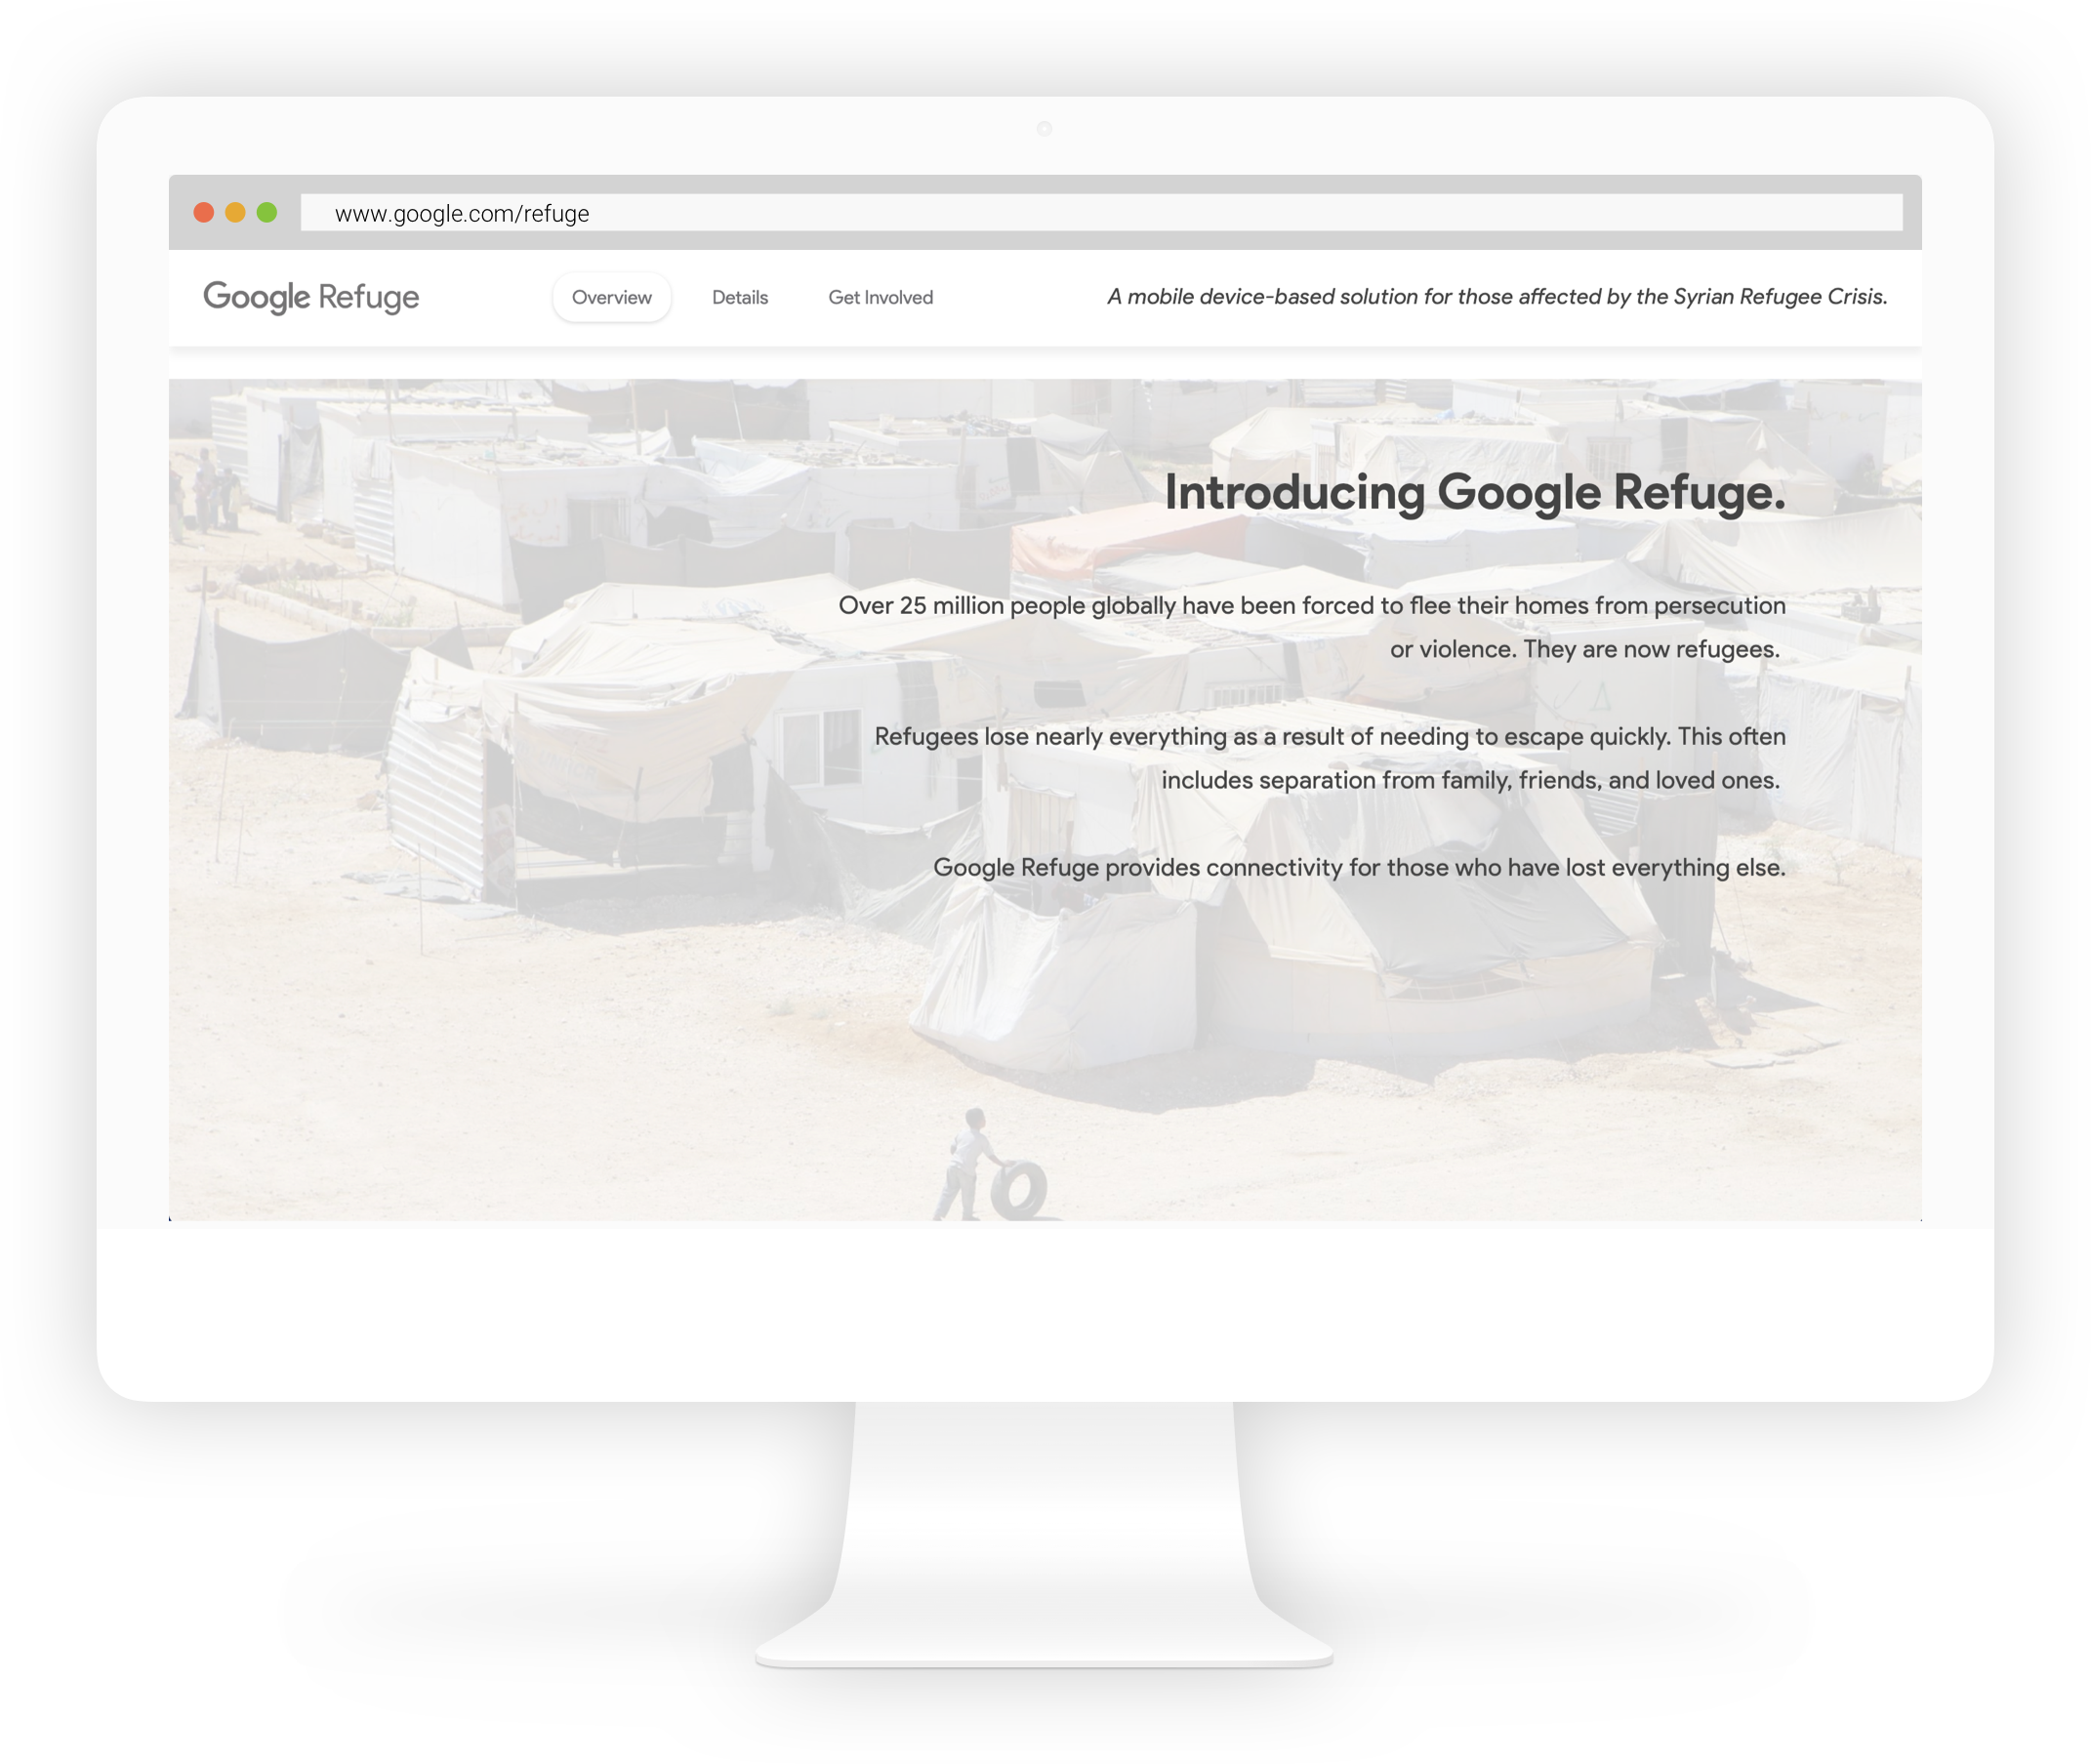 The Google Refuge website